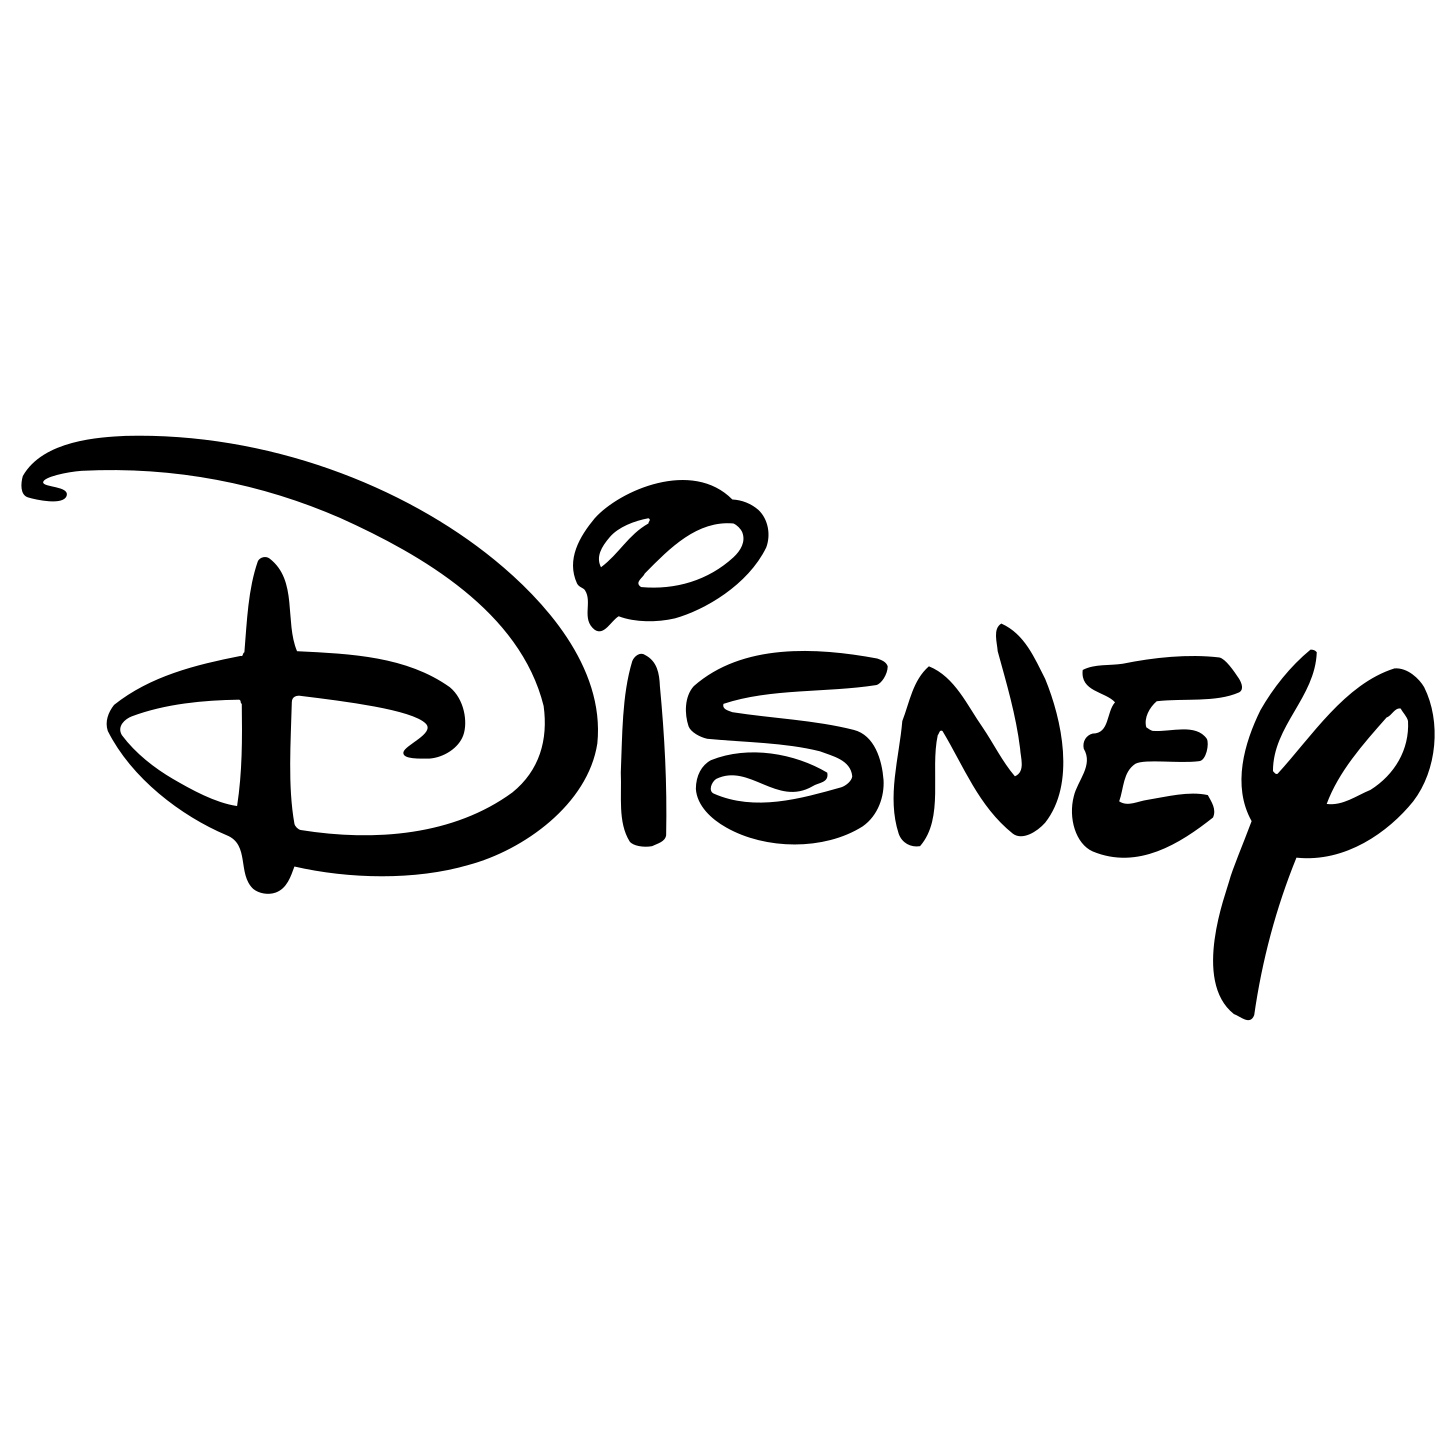 Disney Vector Logo - Download Free SVG Icon | Worldvectorlogo